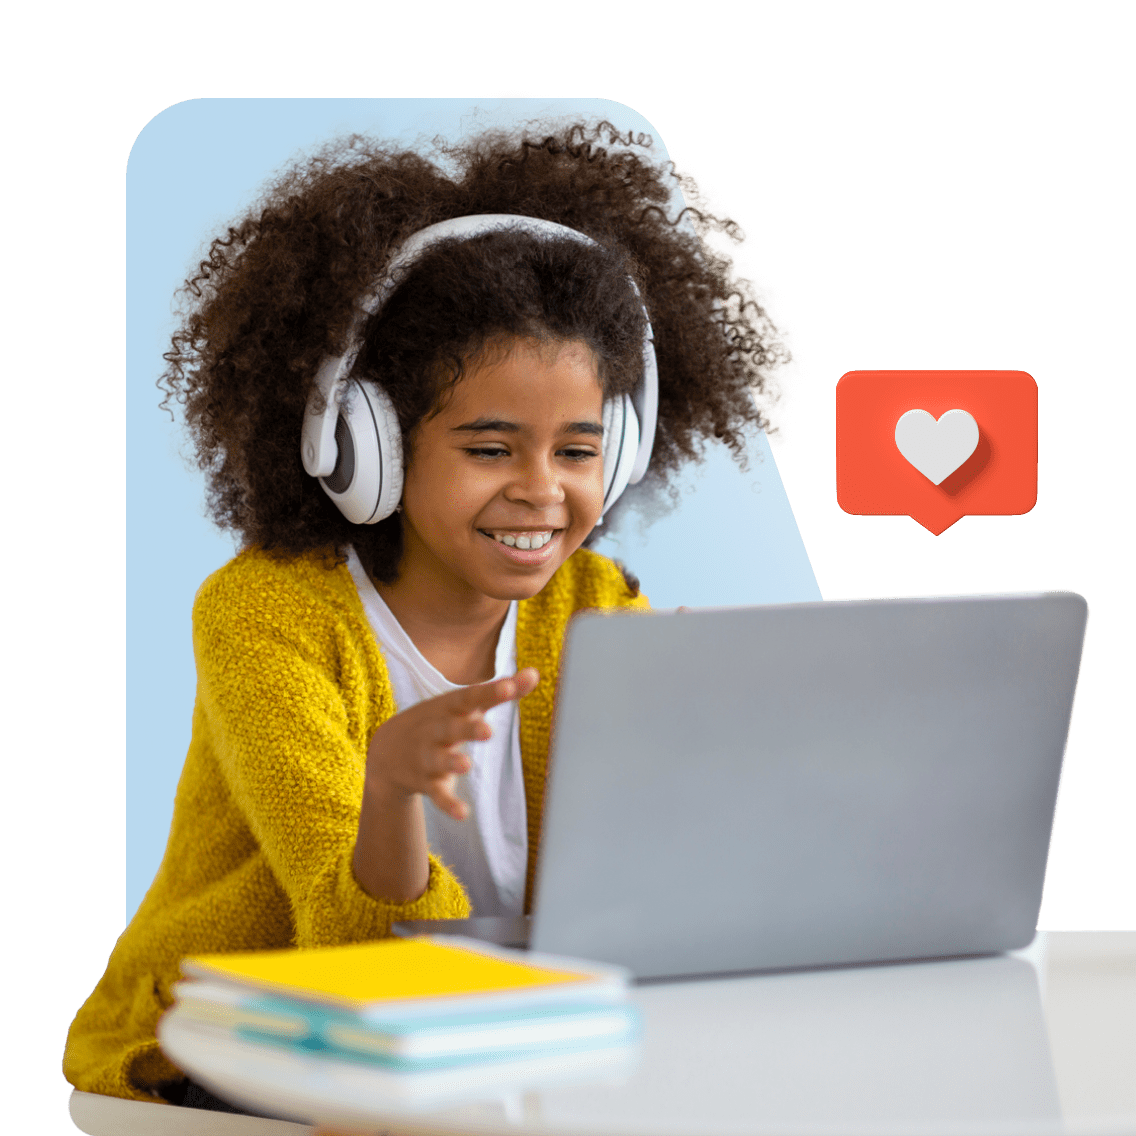 Online Homeschool Costs image 9 (name 1 Young Girl Laptop Headphones Heart)